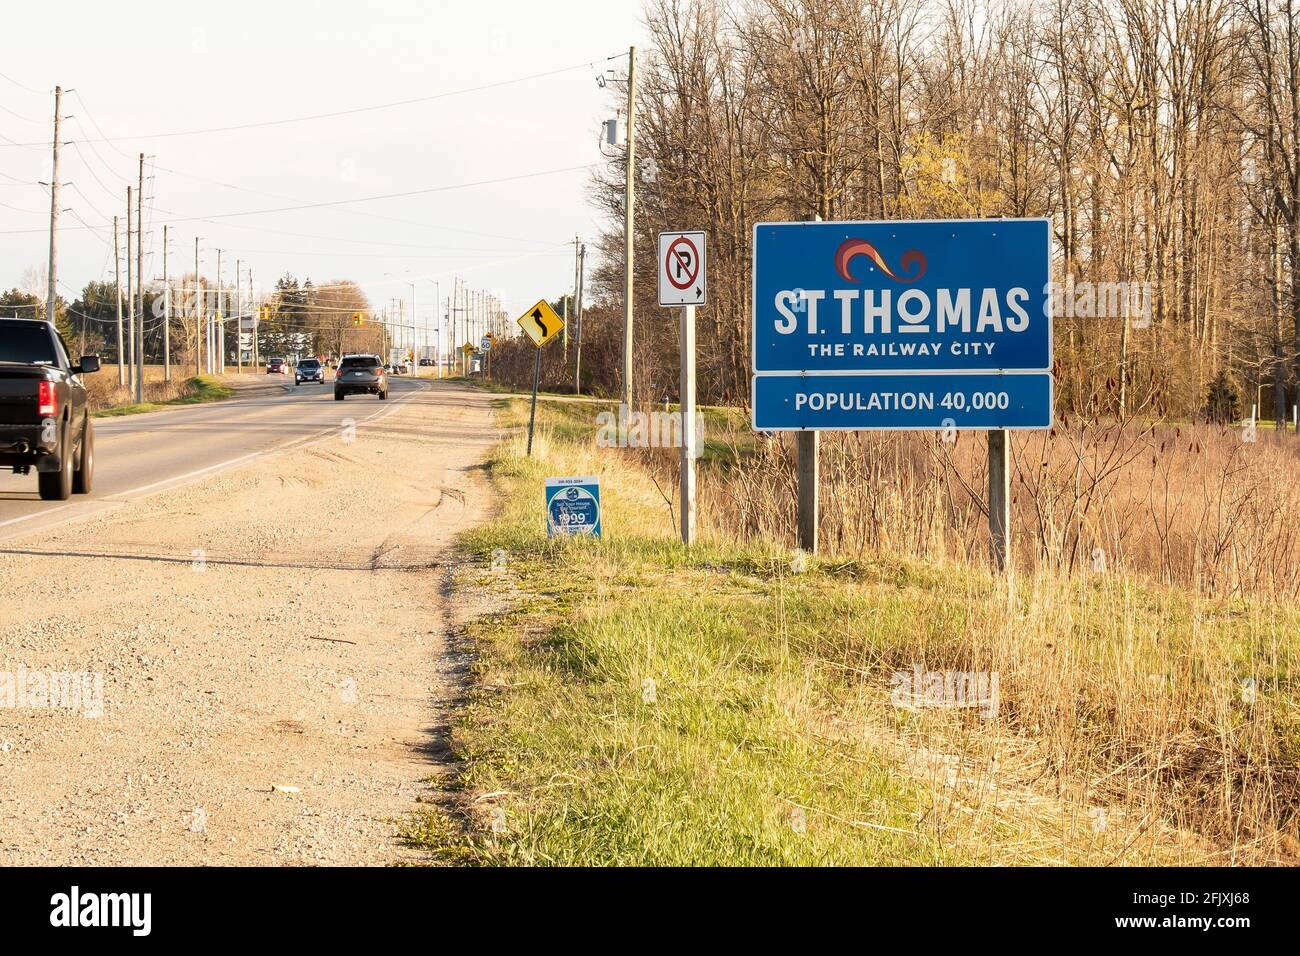 Le panneau « City of St. Thomas » se trouve à la limite de la ville sur Highbury Avenue. Population 40 000. Slogan « ville ferroviaire ». St. Thomas, Ontario, Canada Banque D'Images